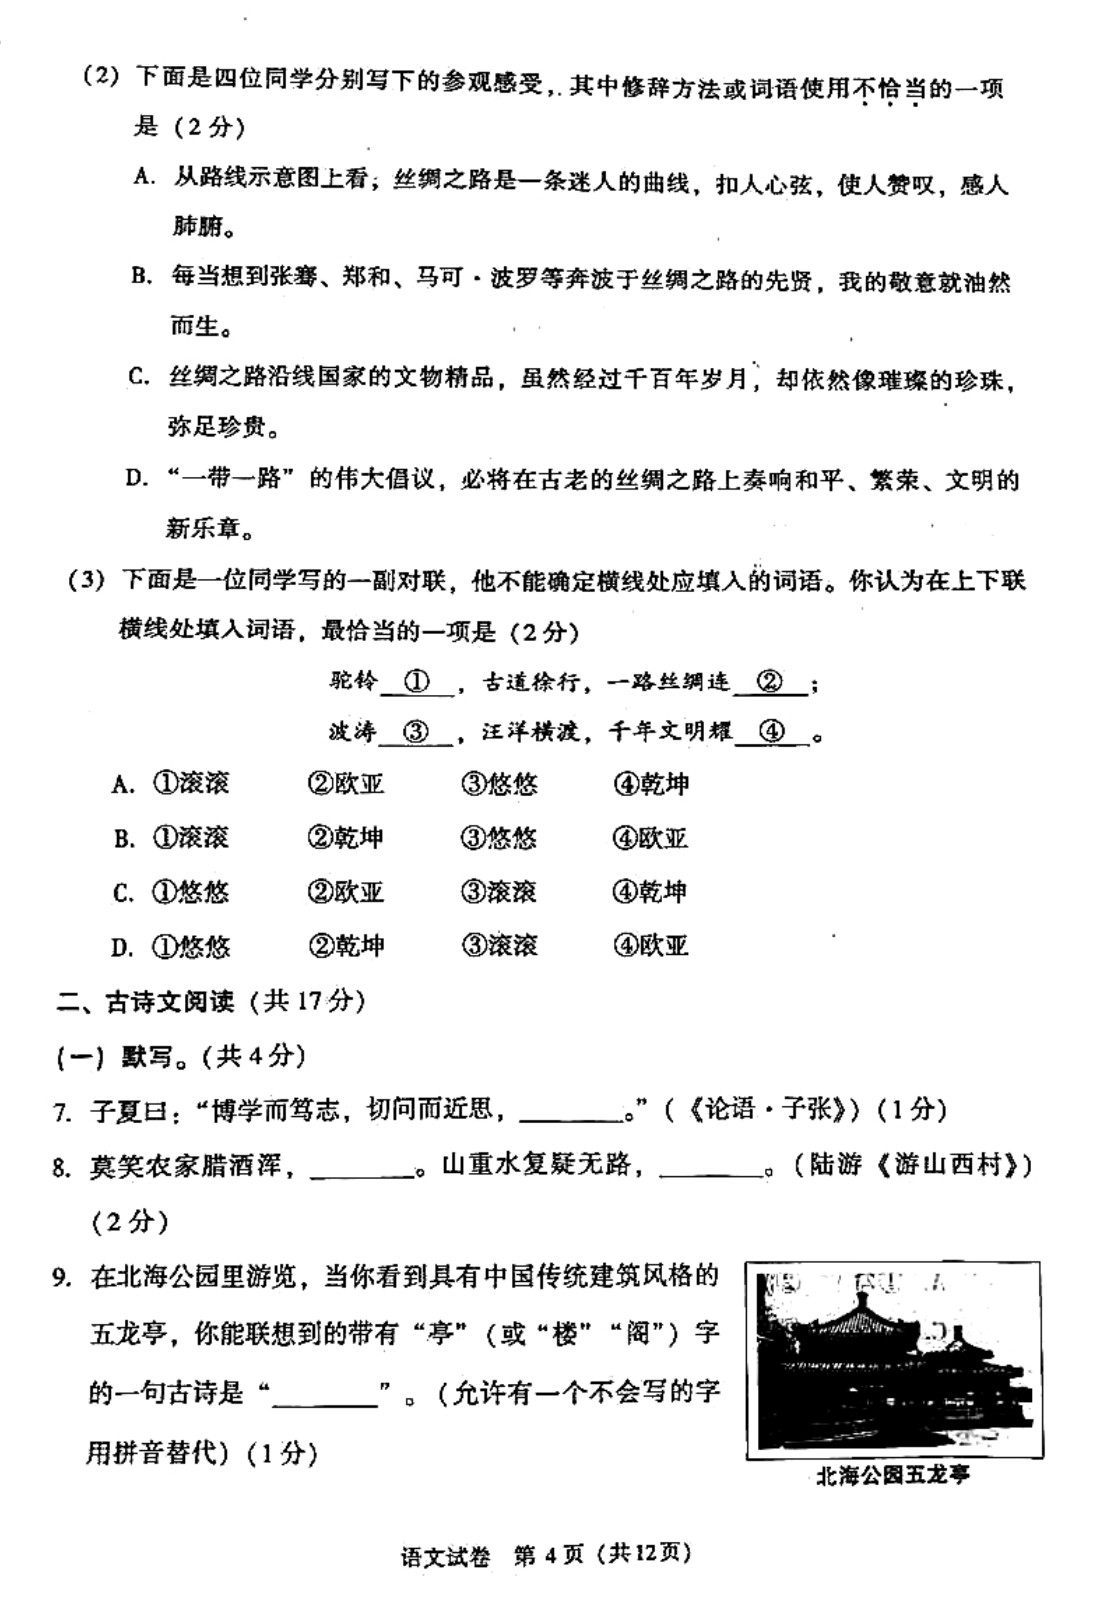 2019年北京中考《语文》真题及答案已公布